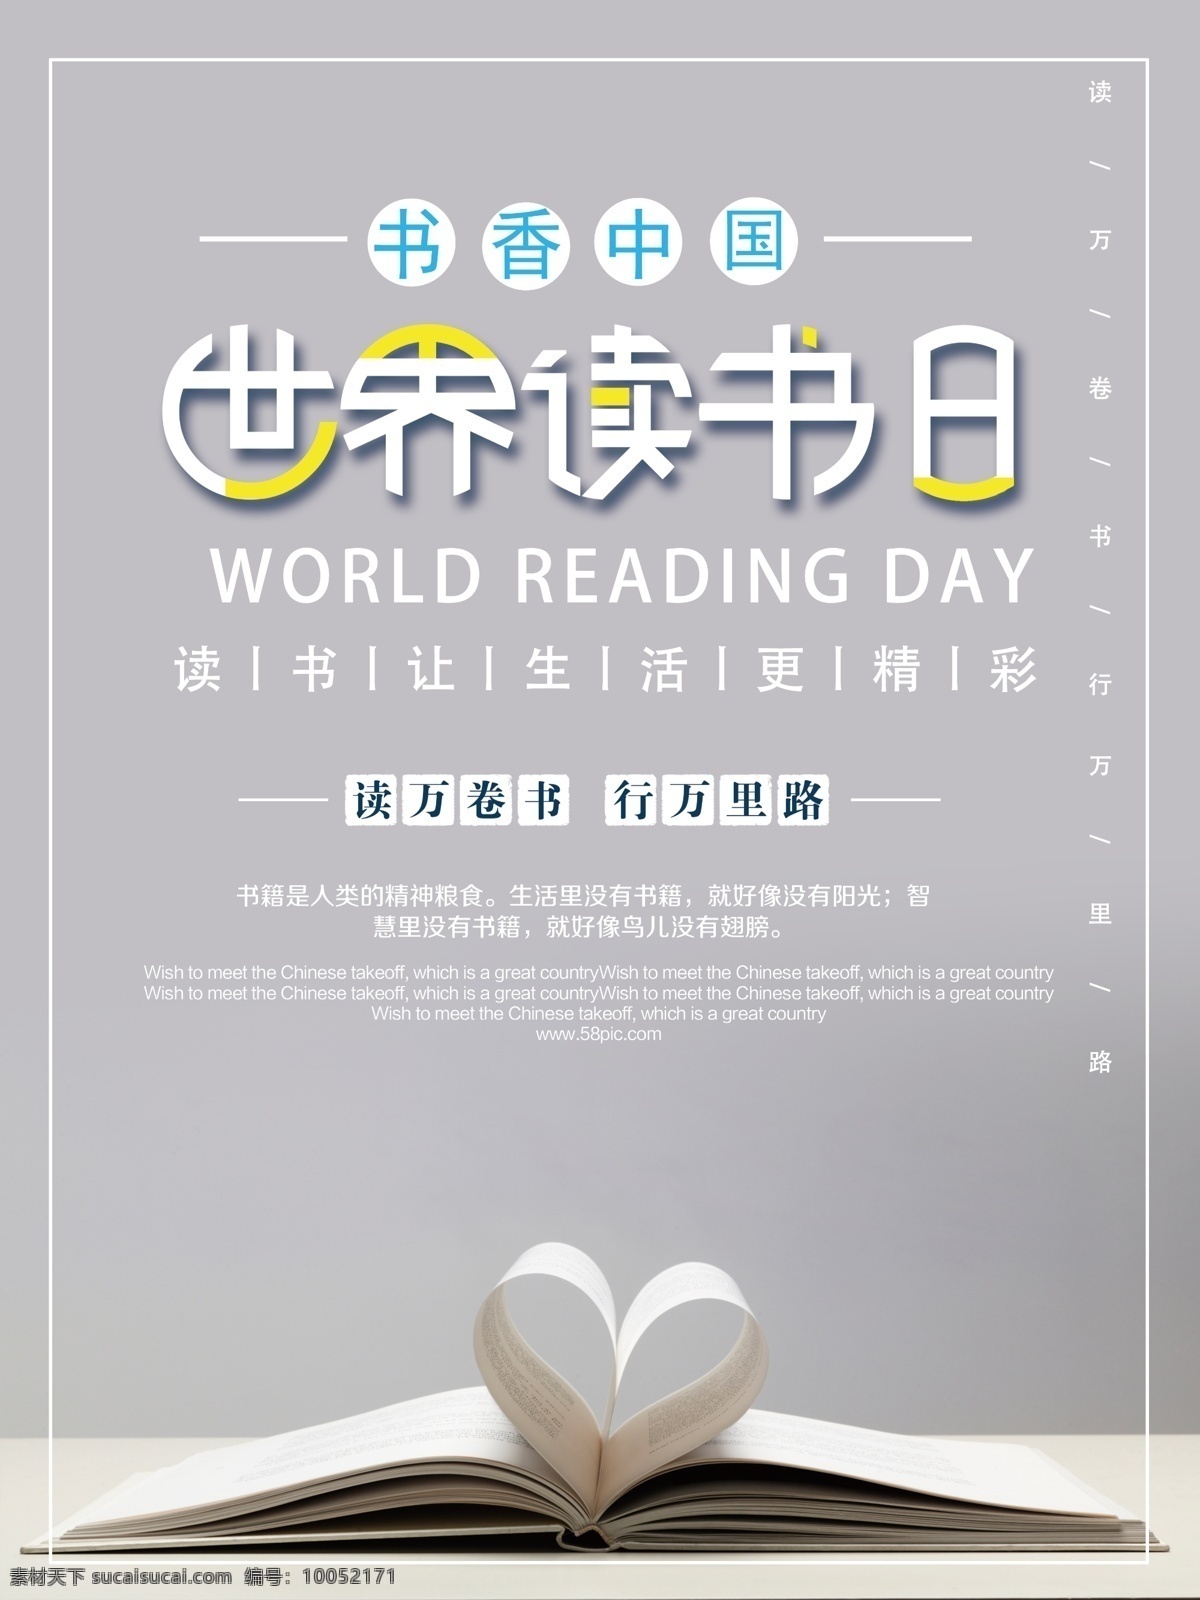 小 清新 风格 世界 读书 日 世界读书日 读万卷书 行万里路 书本 心形 书香中国 生活 更 精彩